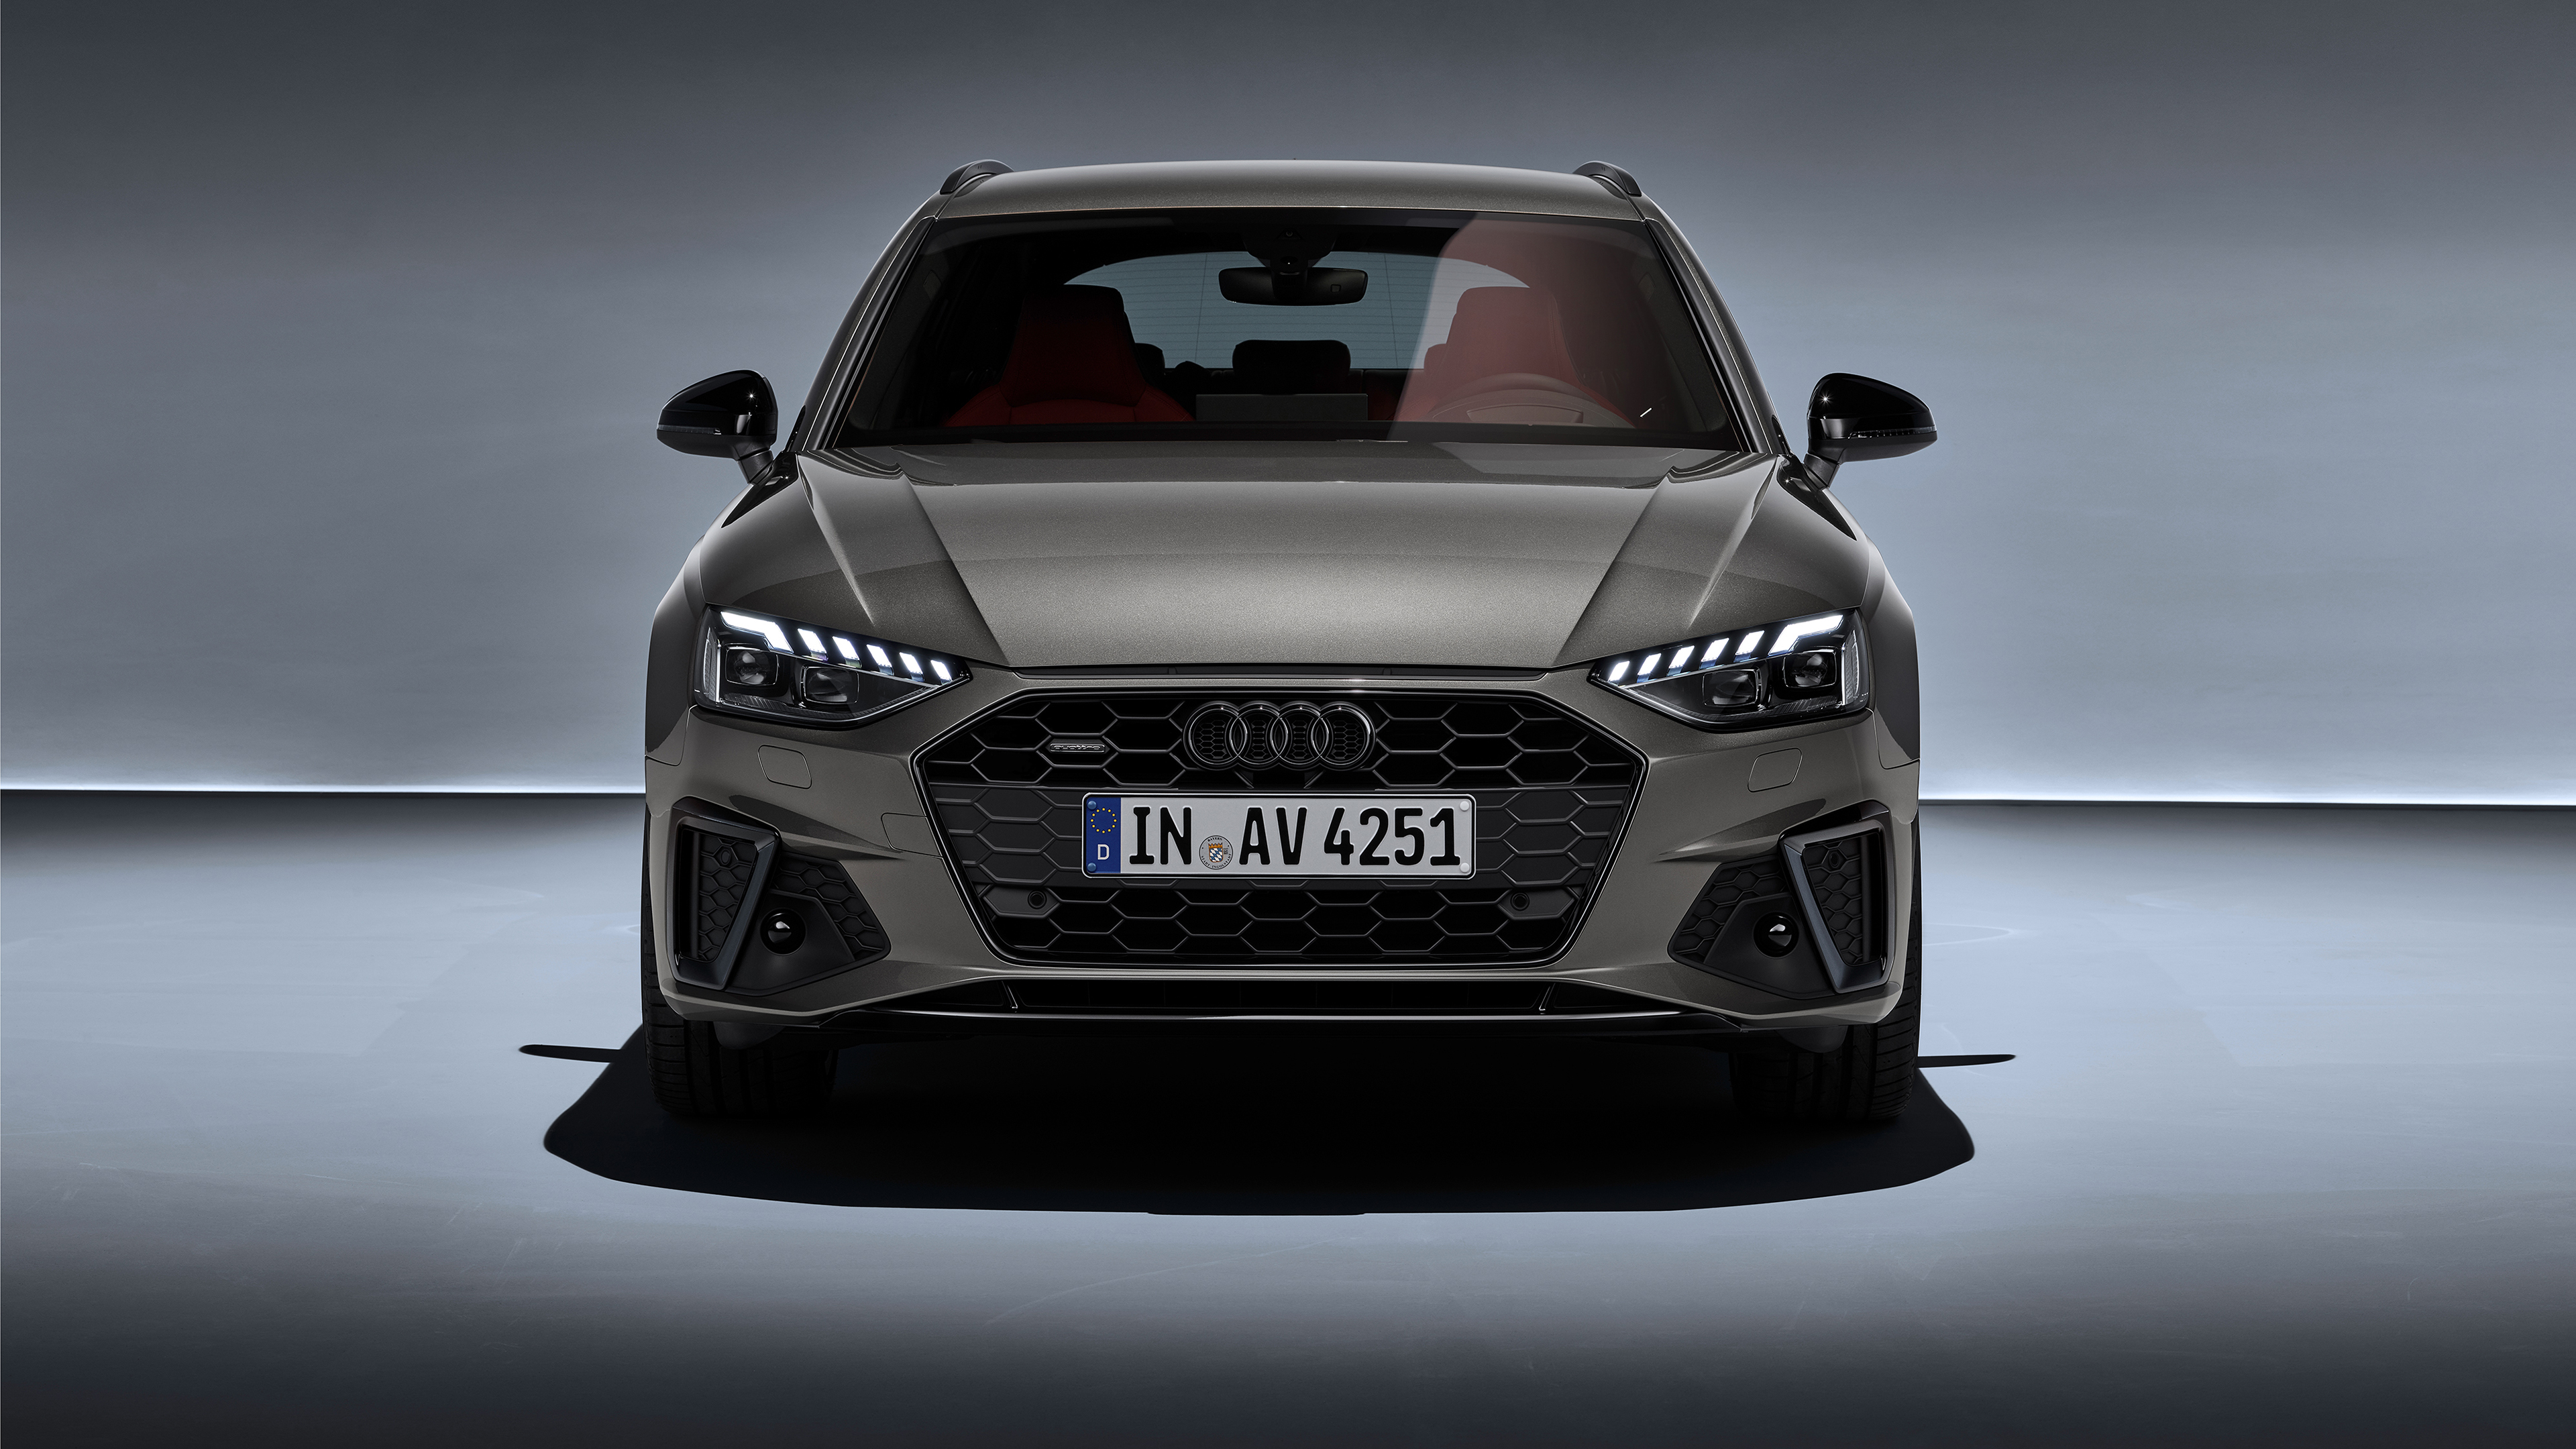 Kelebihan Audi A4 Avant 2019 Harga Juragan Mobil Bekas